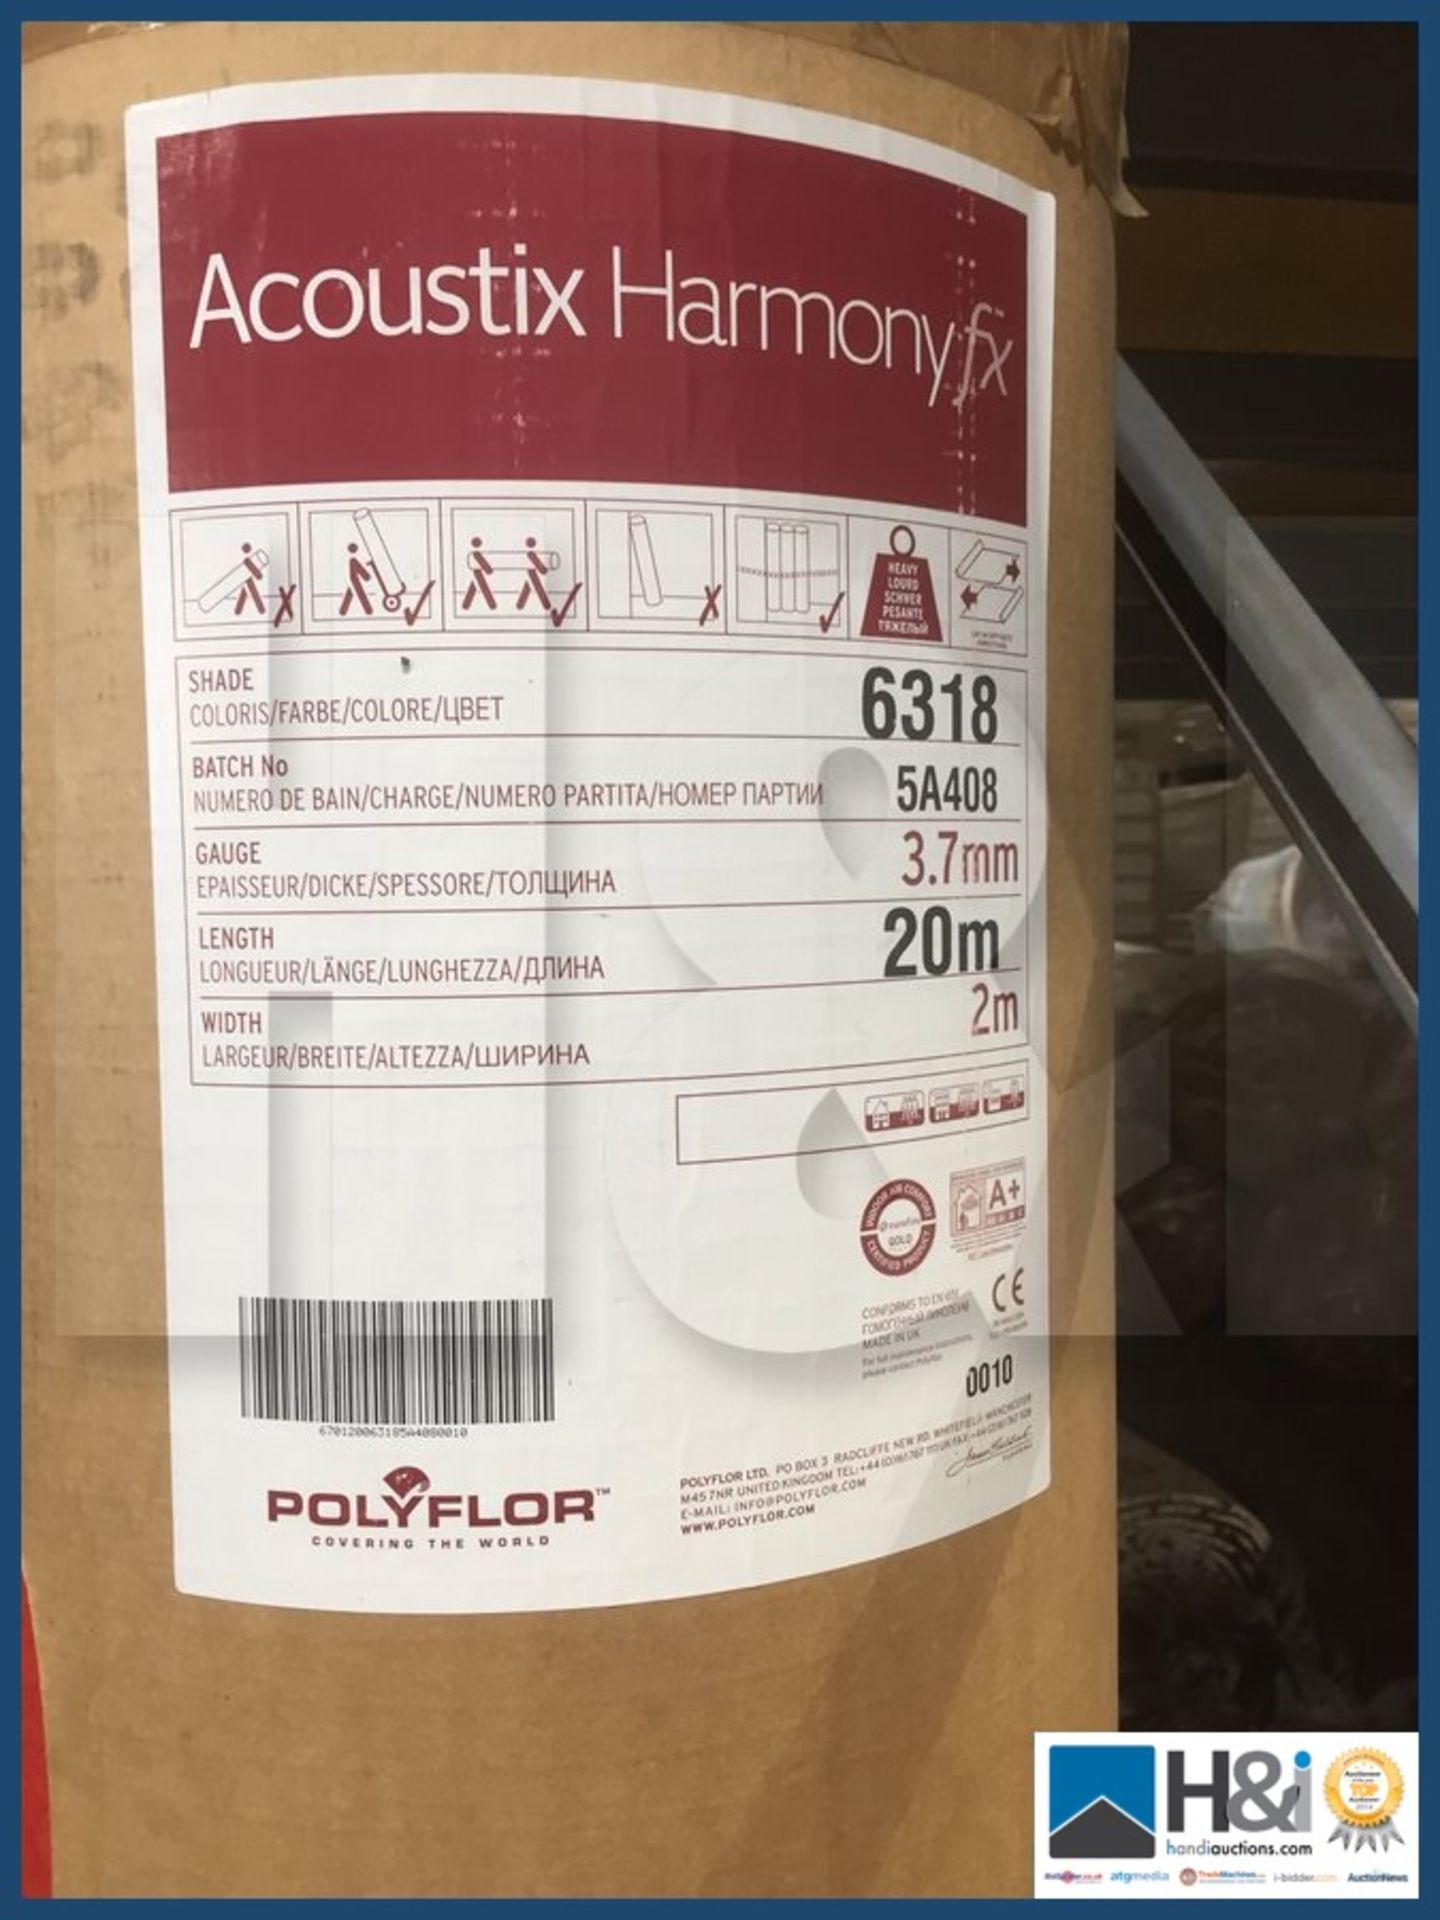 Polyflor Acoustix Harmony FX 6318 Polyflor Acoustix Harmony FX high impact safety flooring Colour 63